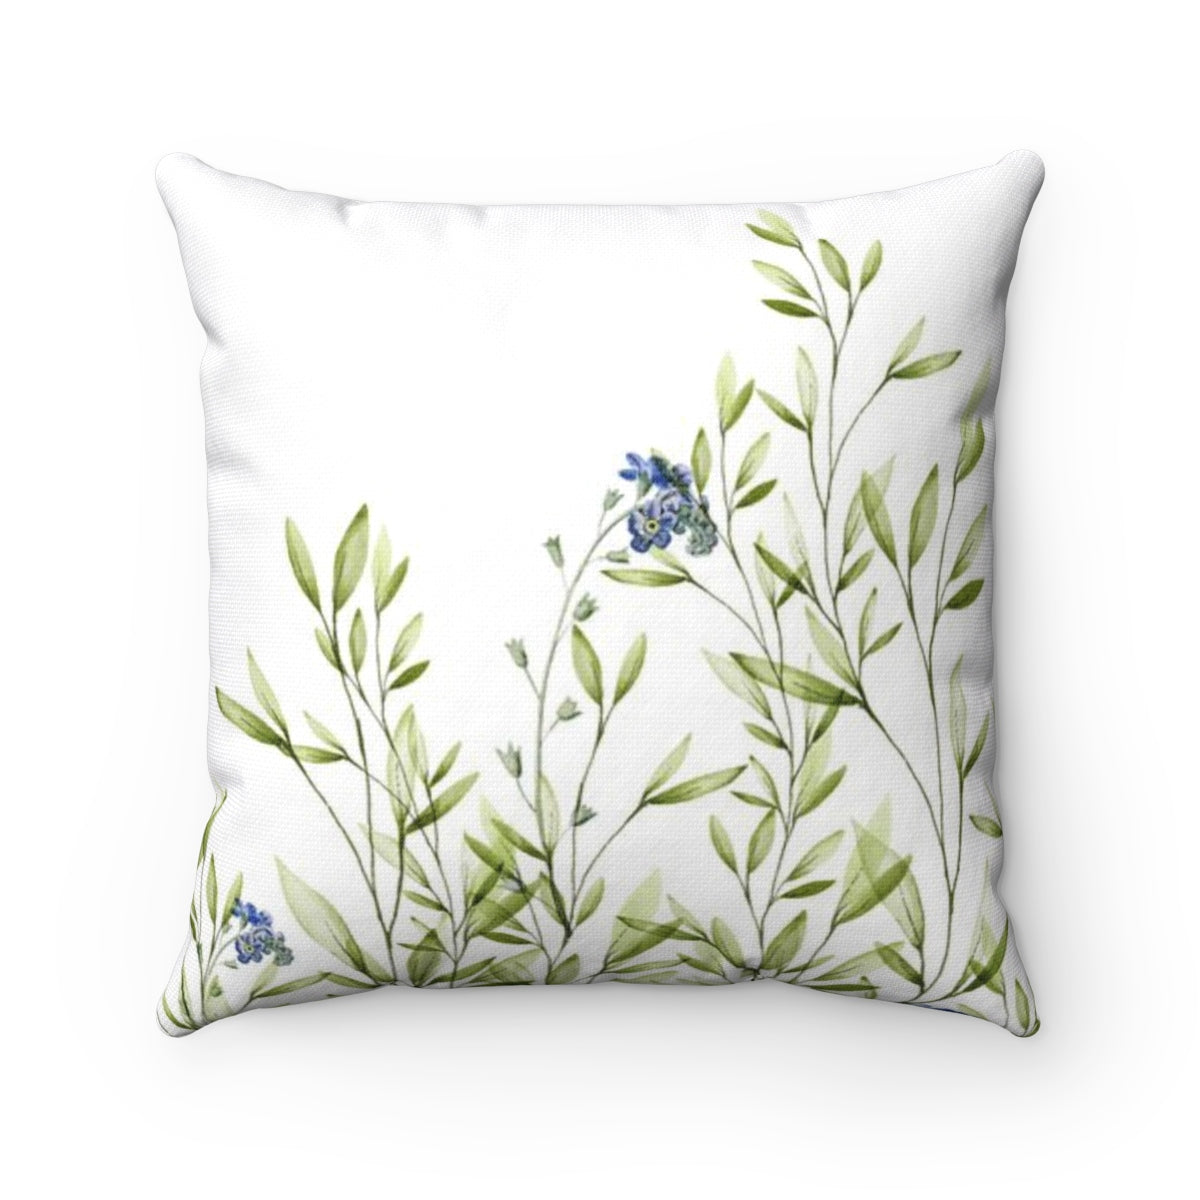 Botanical Throw Pillow - Liz Kapiloto Art & Design